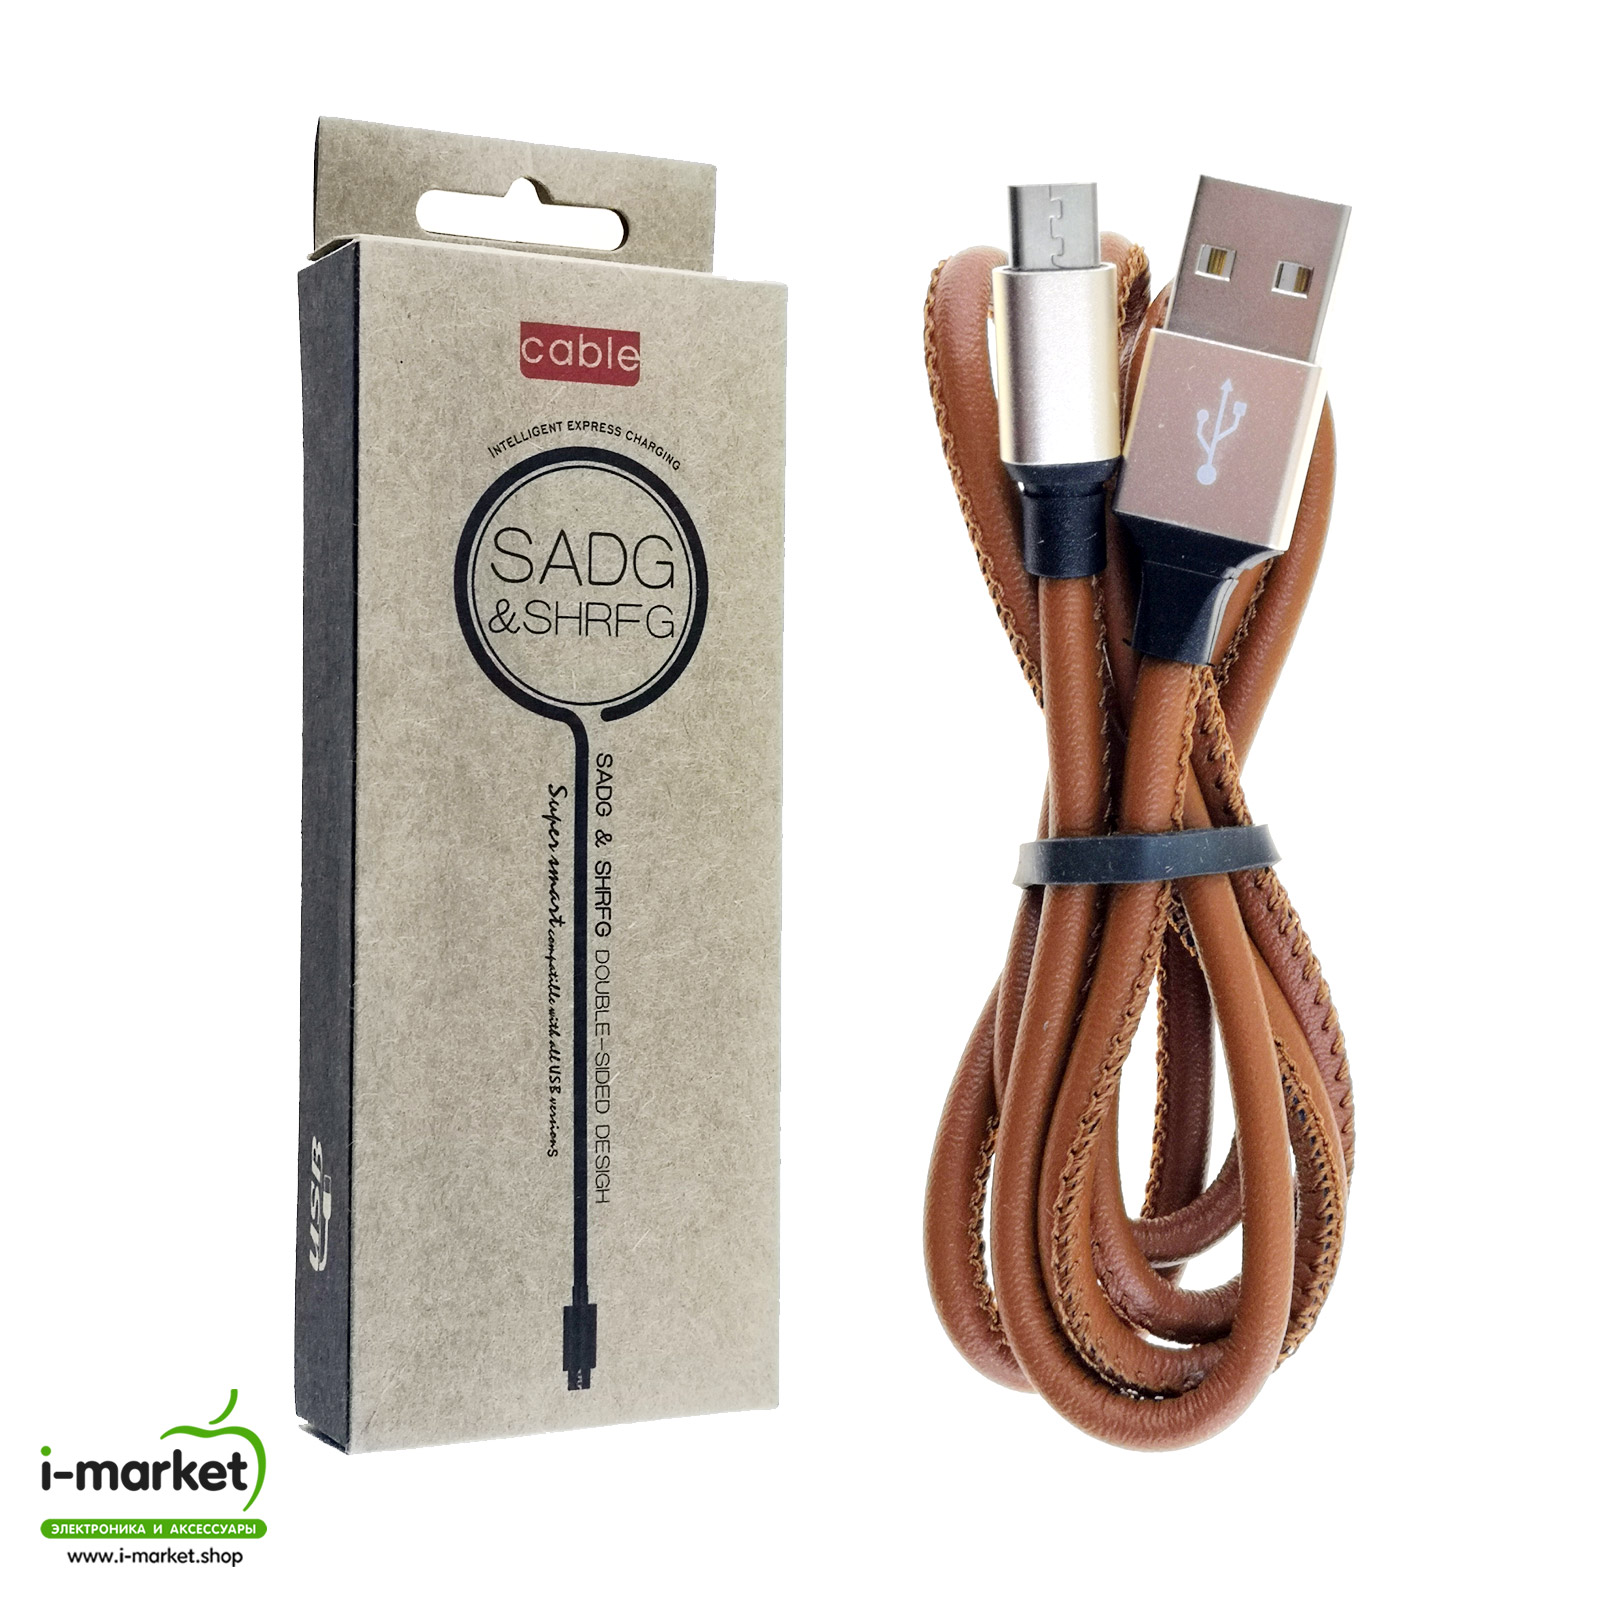 USB Дата-кабель Micro USB, длина 1 метр, армирование, экокожа, цвет коричневый.